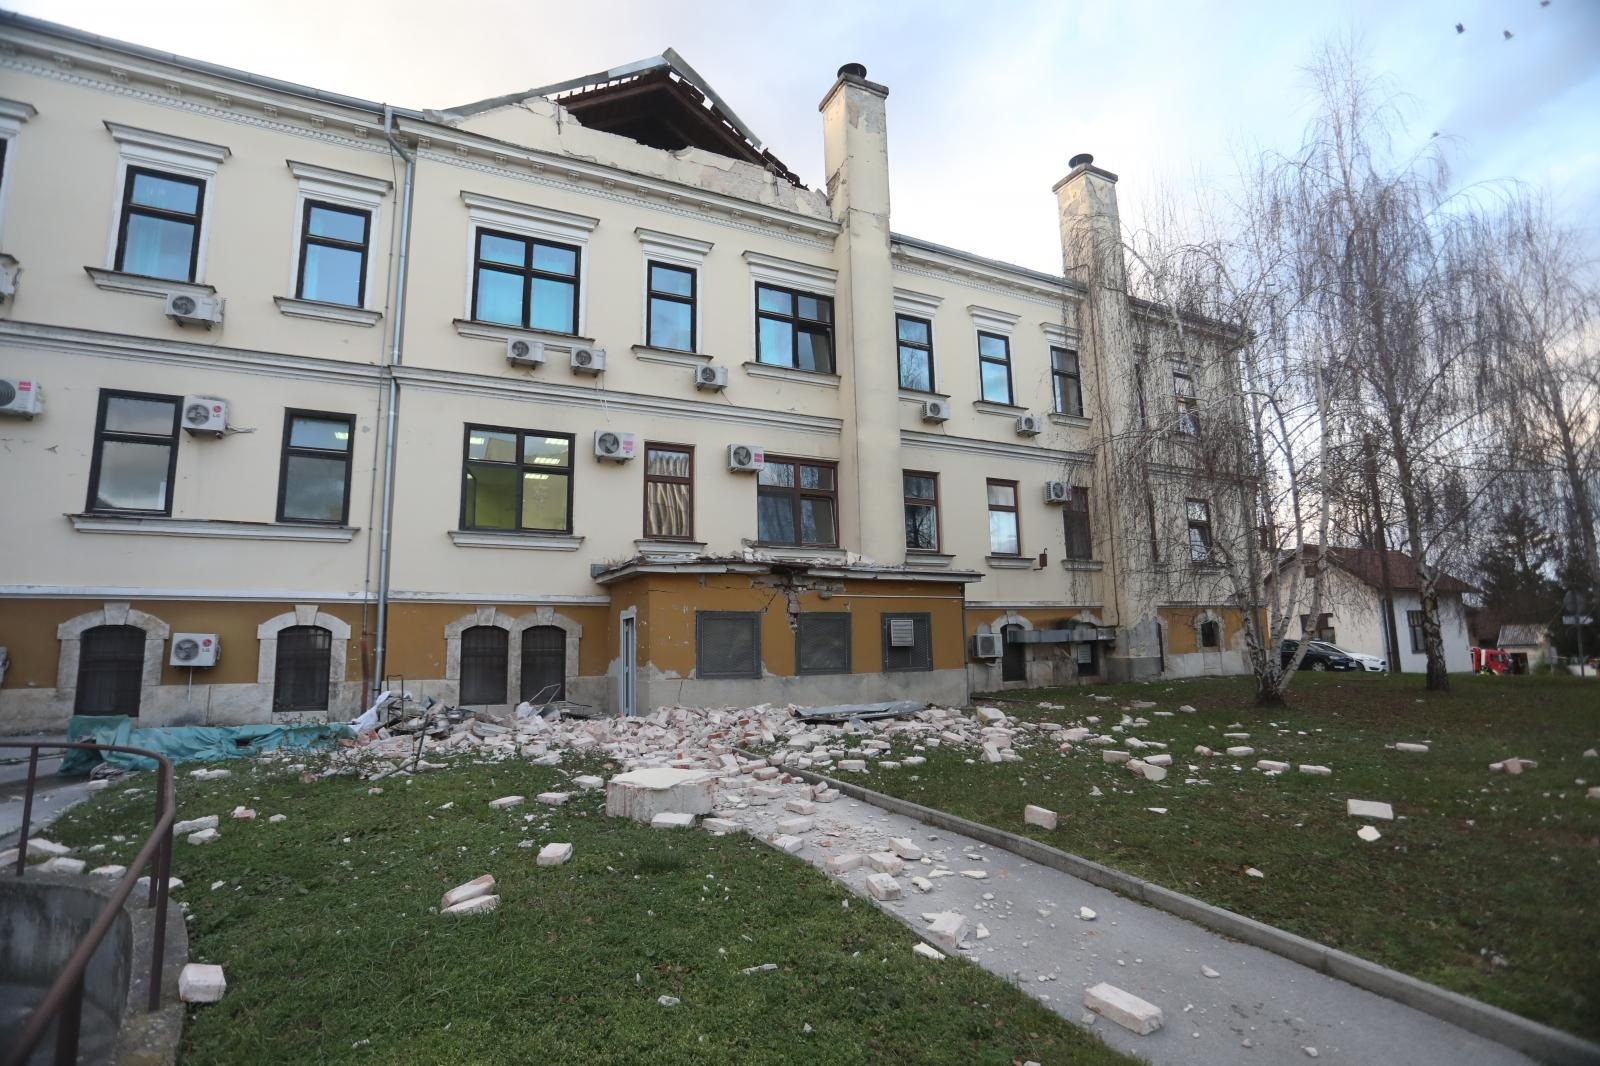 29.12.2020., Sisak - Posljedice jakog potresa jacine 6.3 po Richteru u Sisku i okolici. Photo: Marin Tironi/PIXSELL